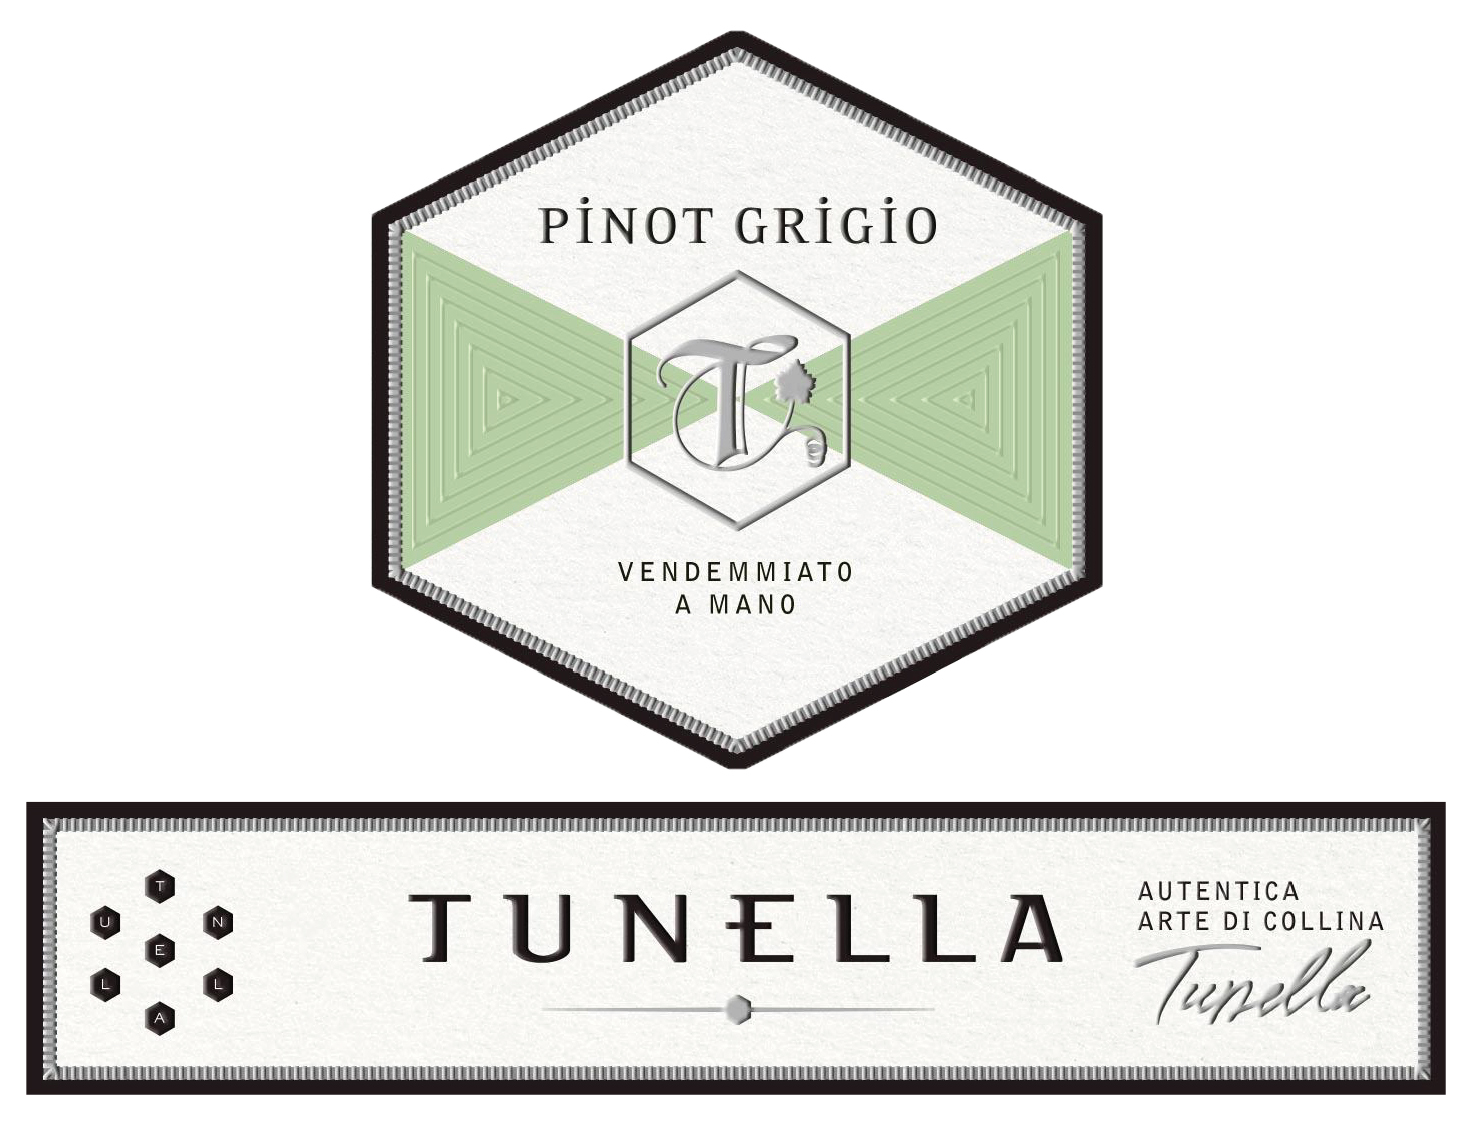 Tunella - Pinot Grigio label